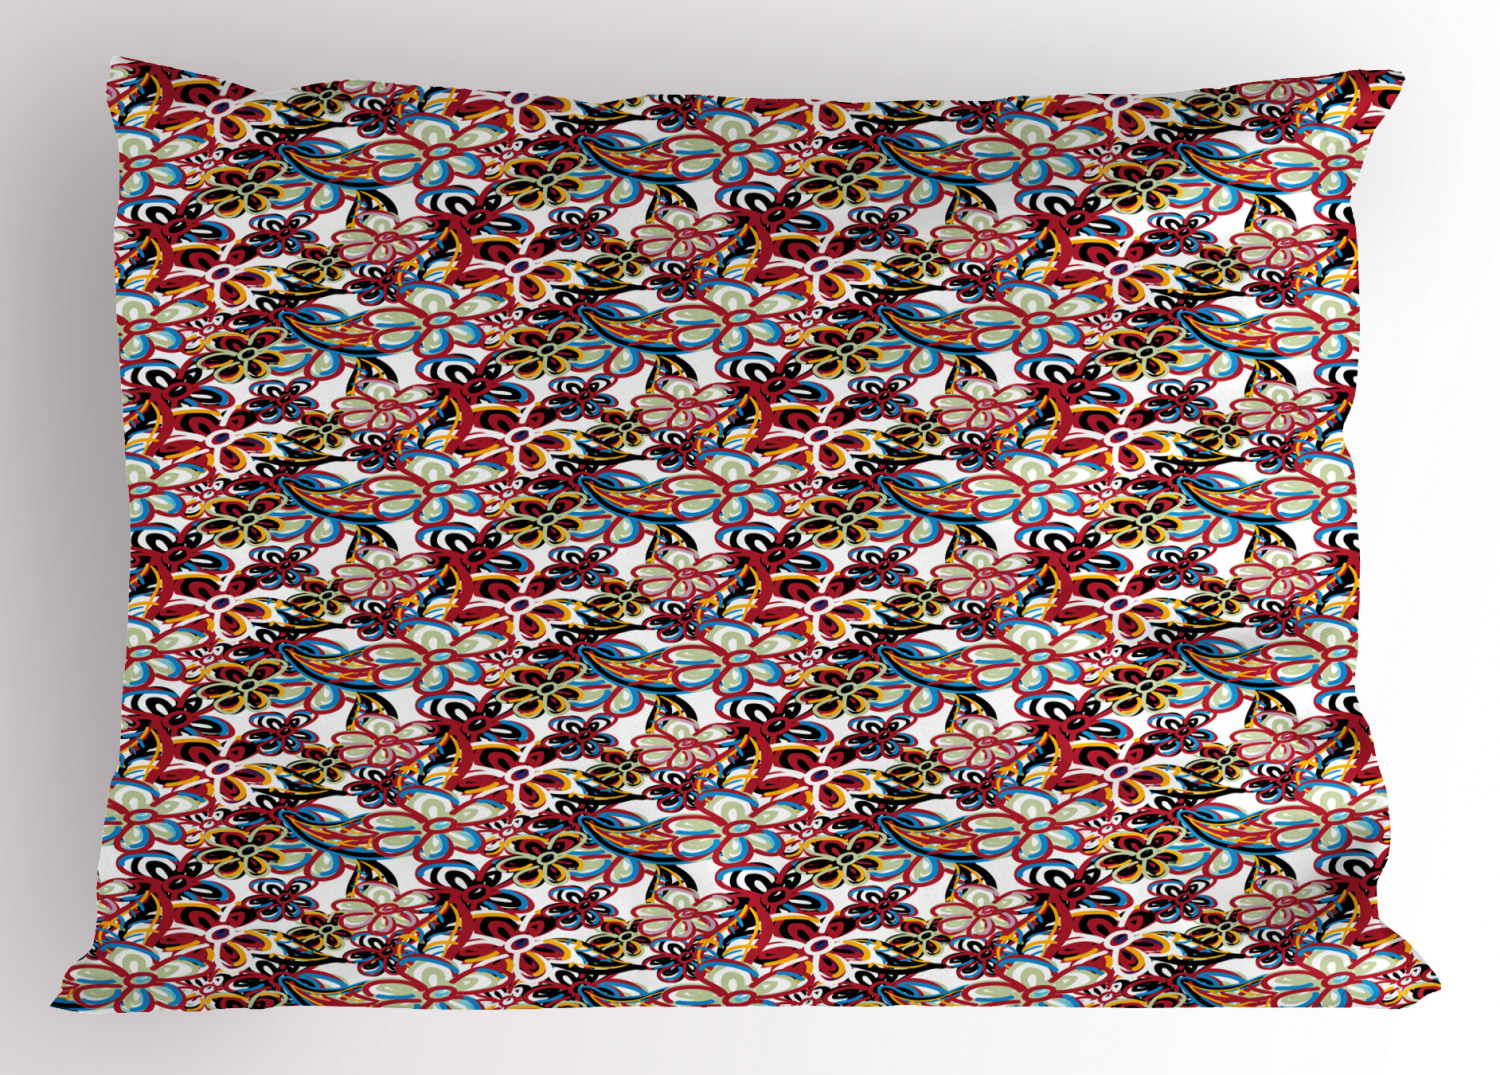 Details about   Vivid Colorful Pillow Sham Decorative Pillowcase 3 Sizes Bedroom Decoration 